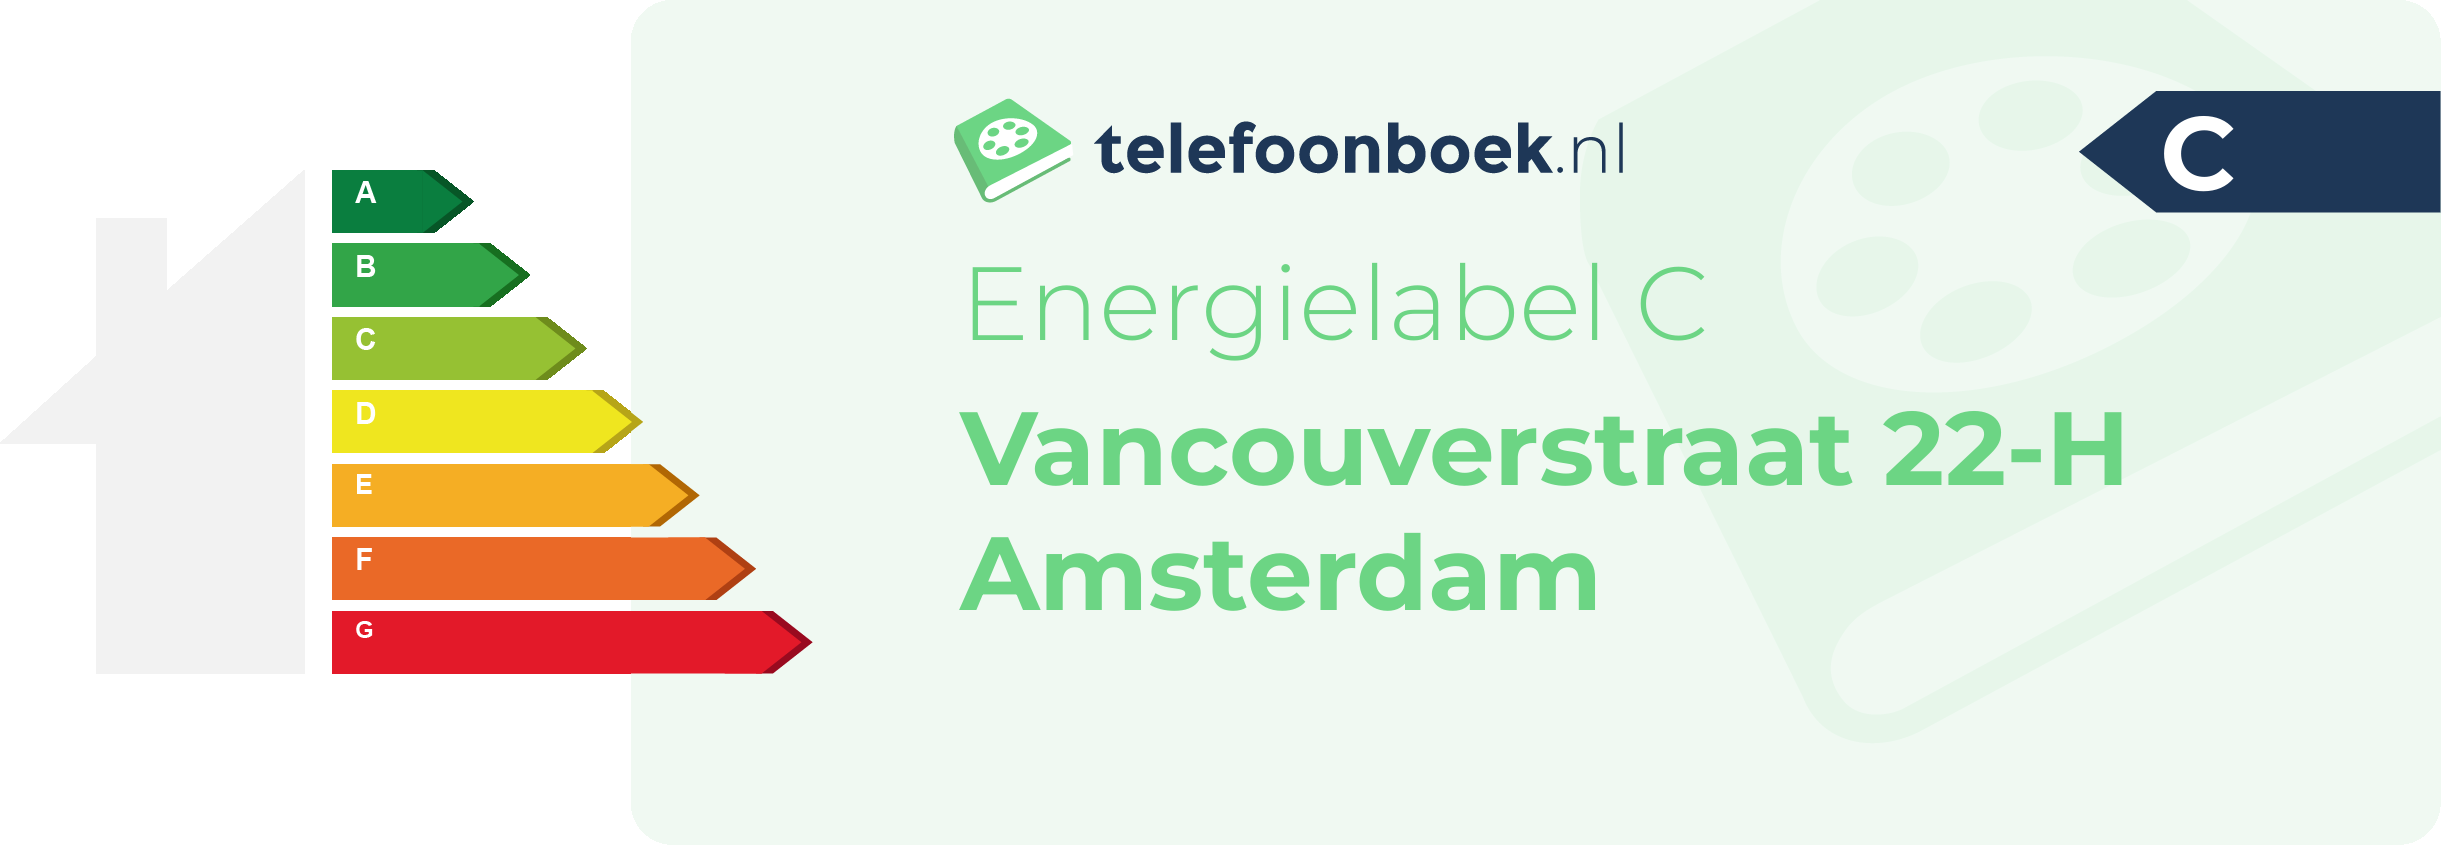 Energielabel Vancouverstraat 22-H Amsterdam